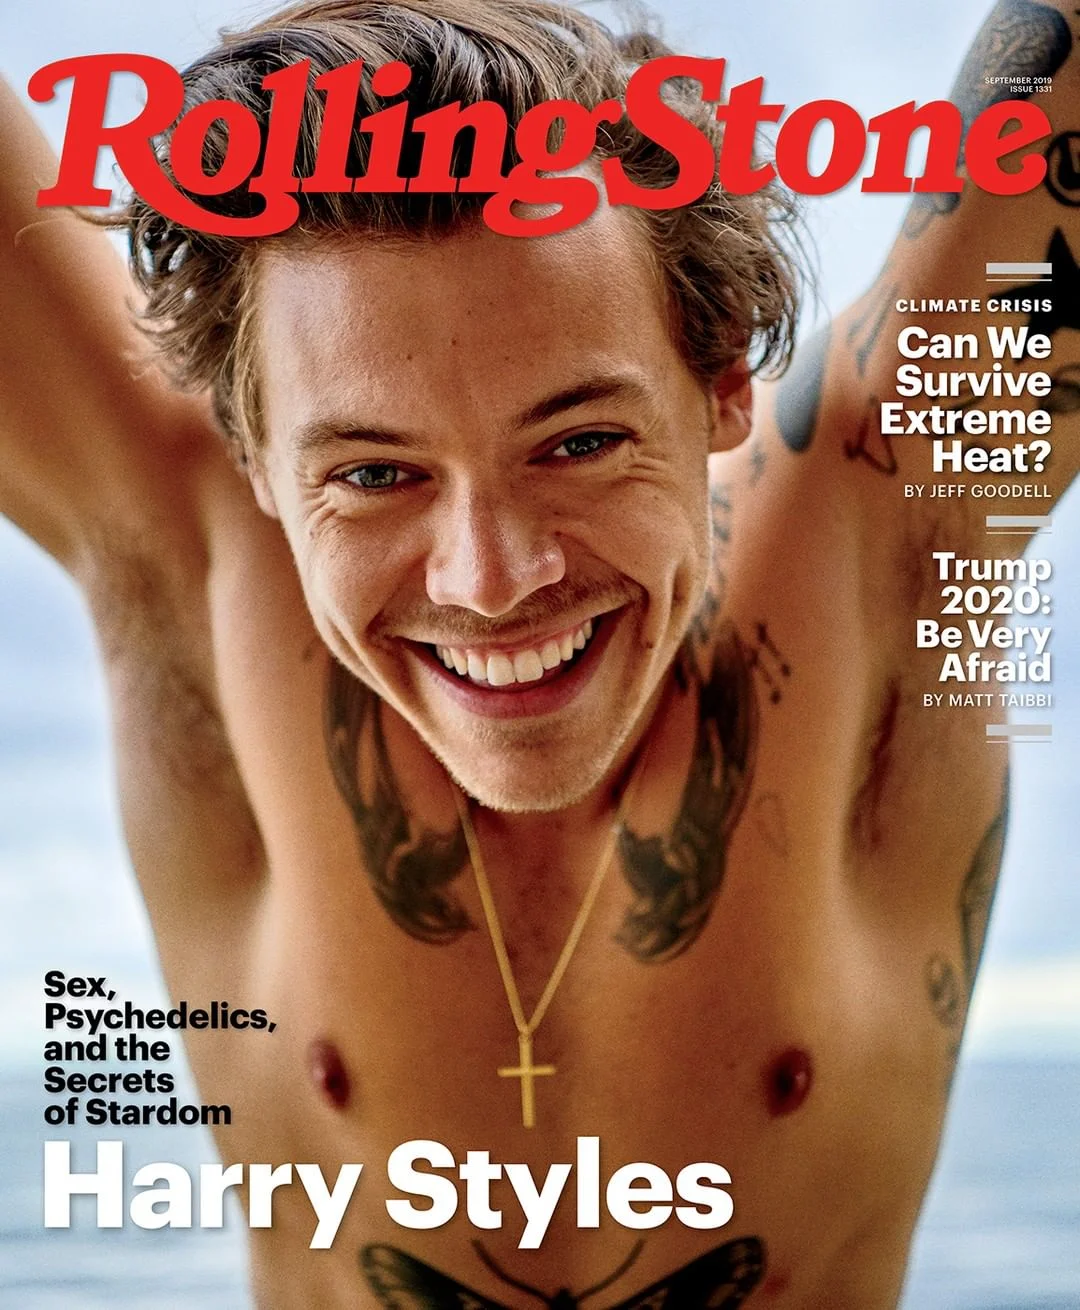 Гарри Стайлс похвастался мохнатыми подмышками на обложке журнала Rolling Stone - фото 446556